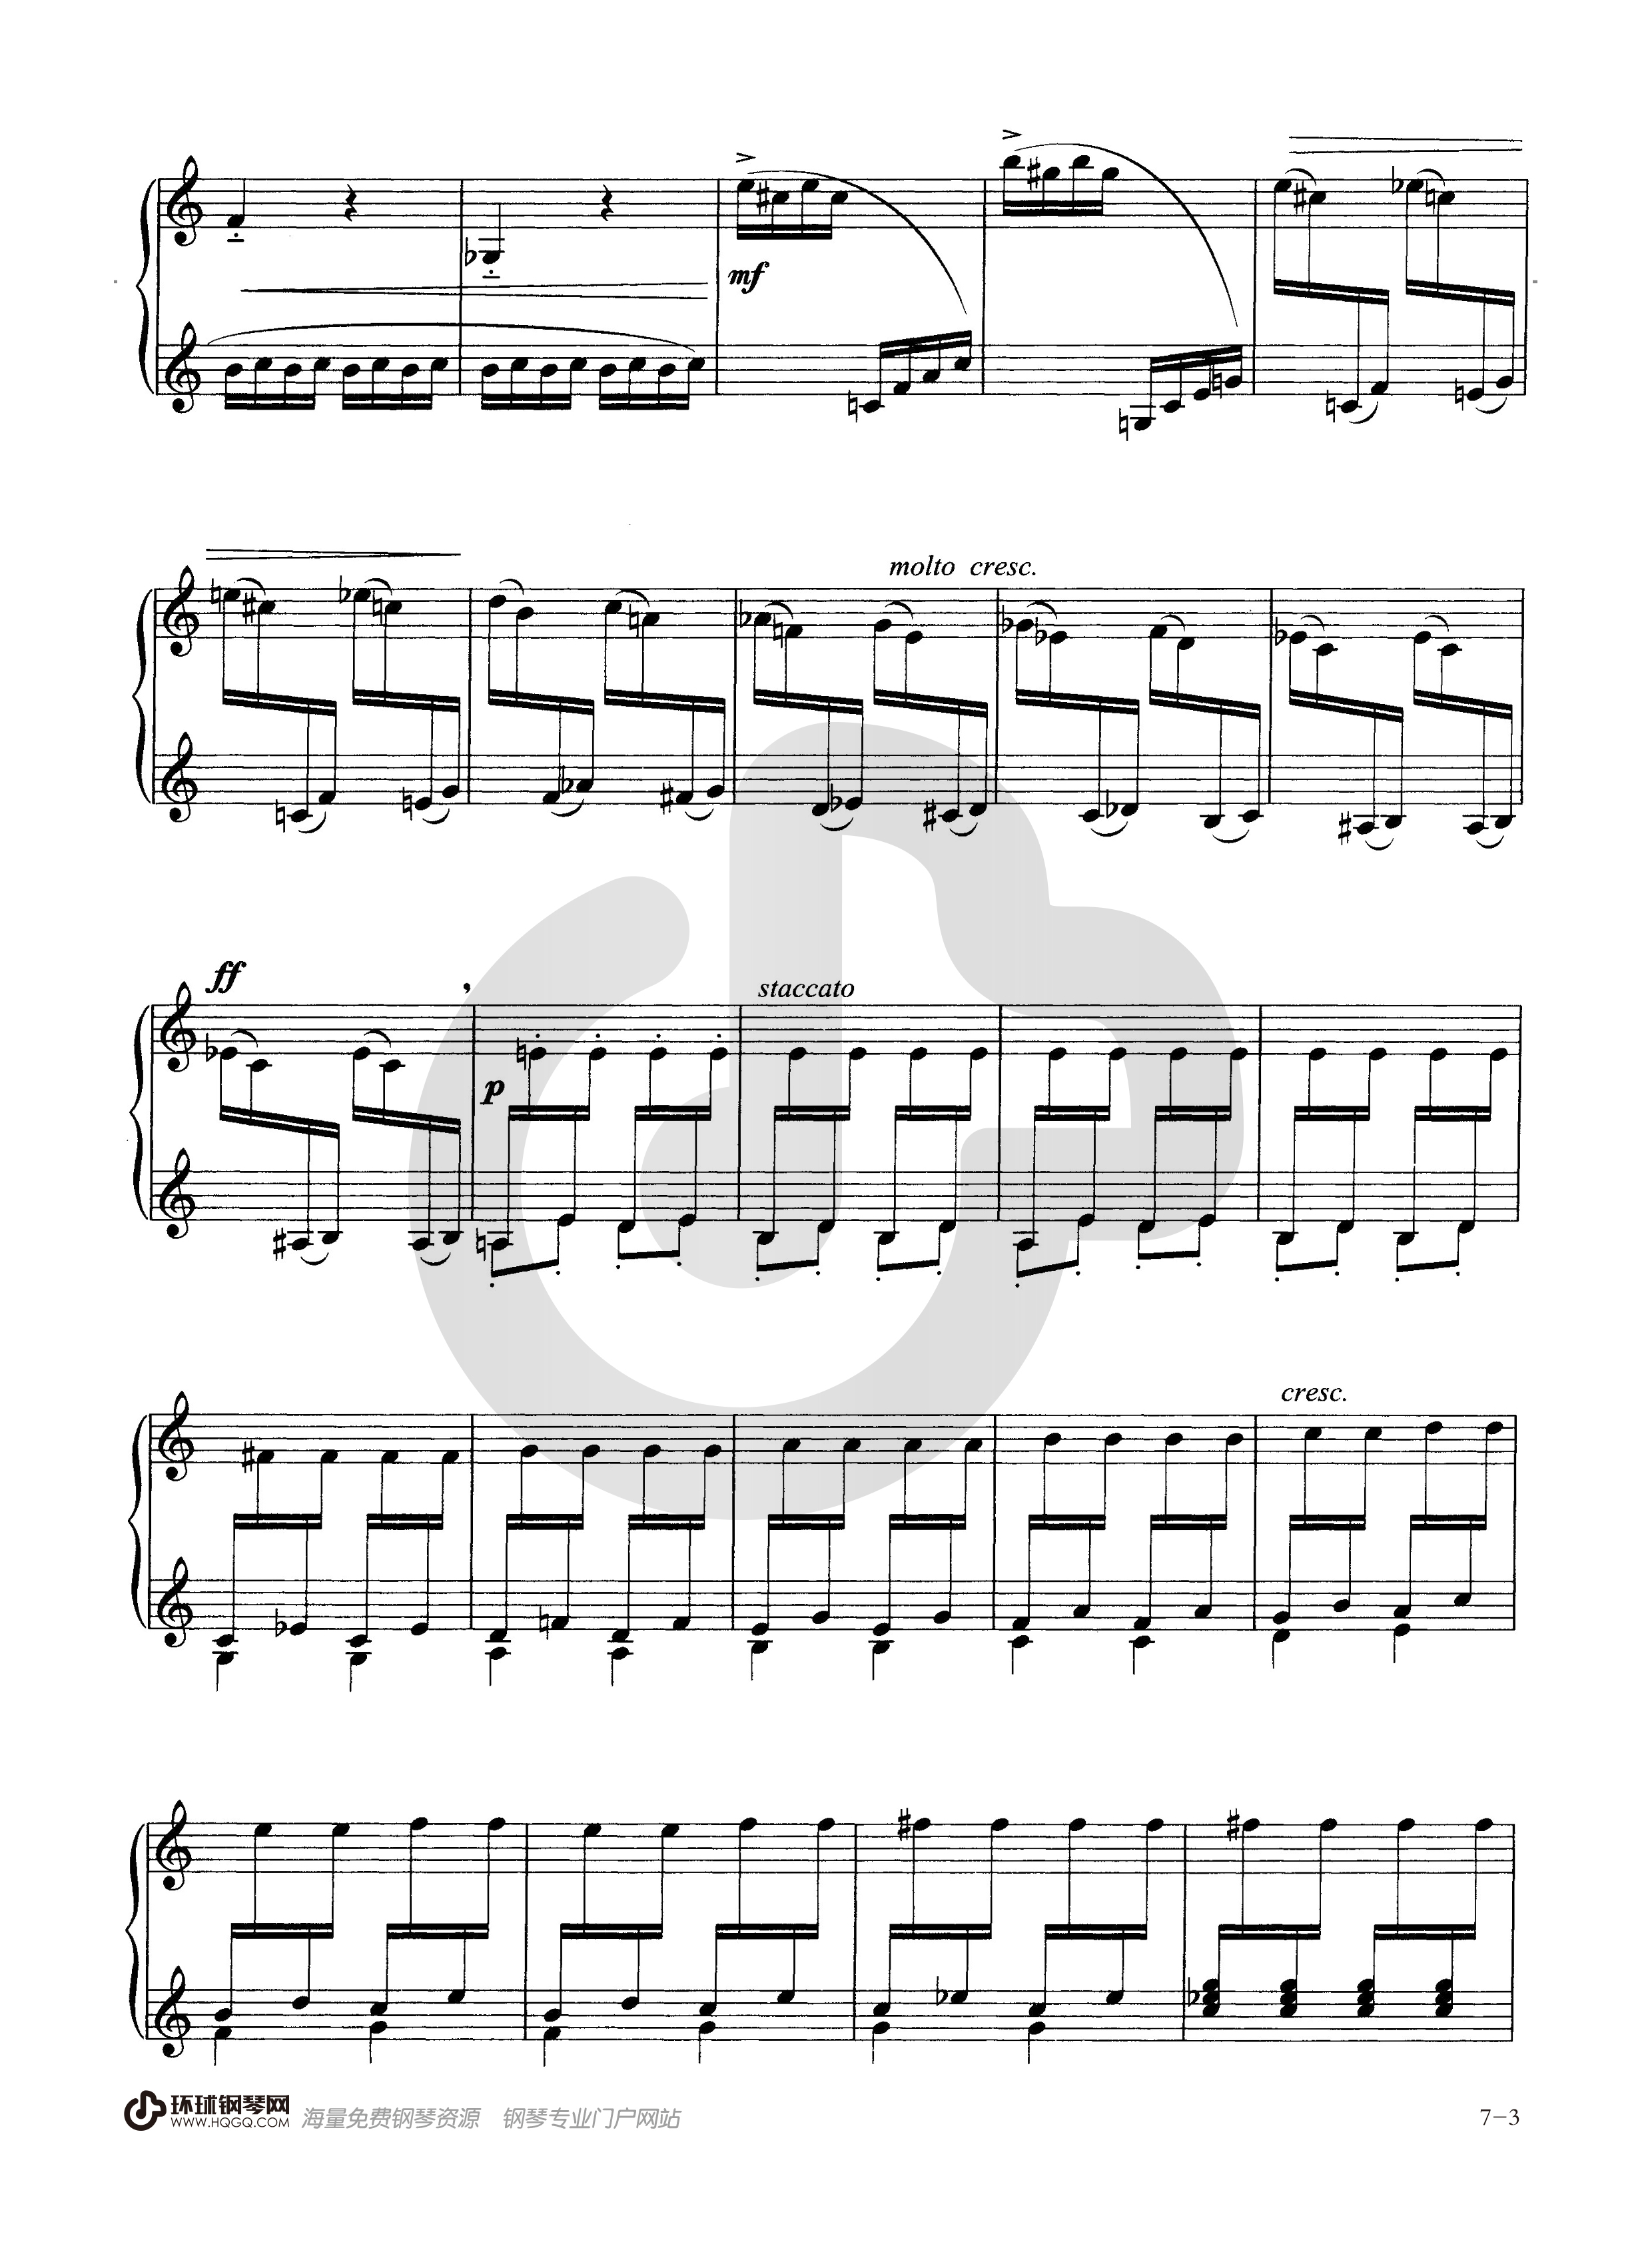 钢琴七级考级曲目谱子图片